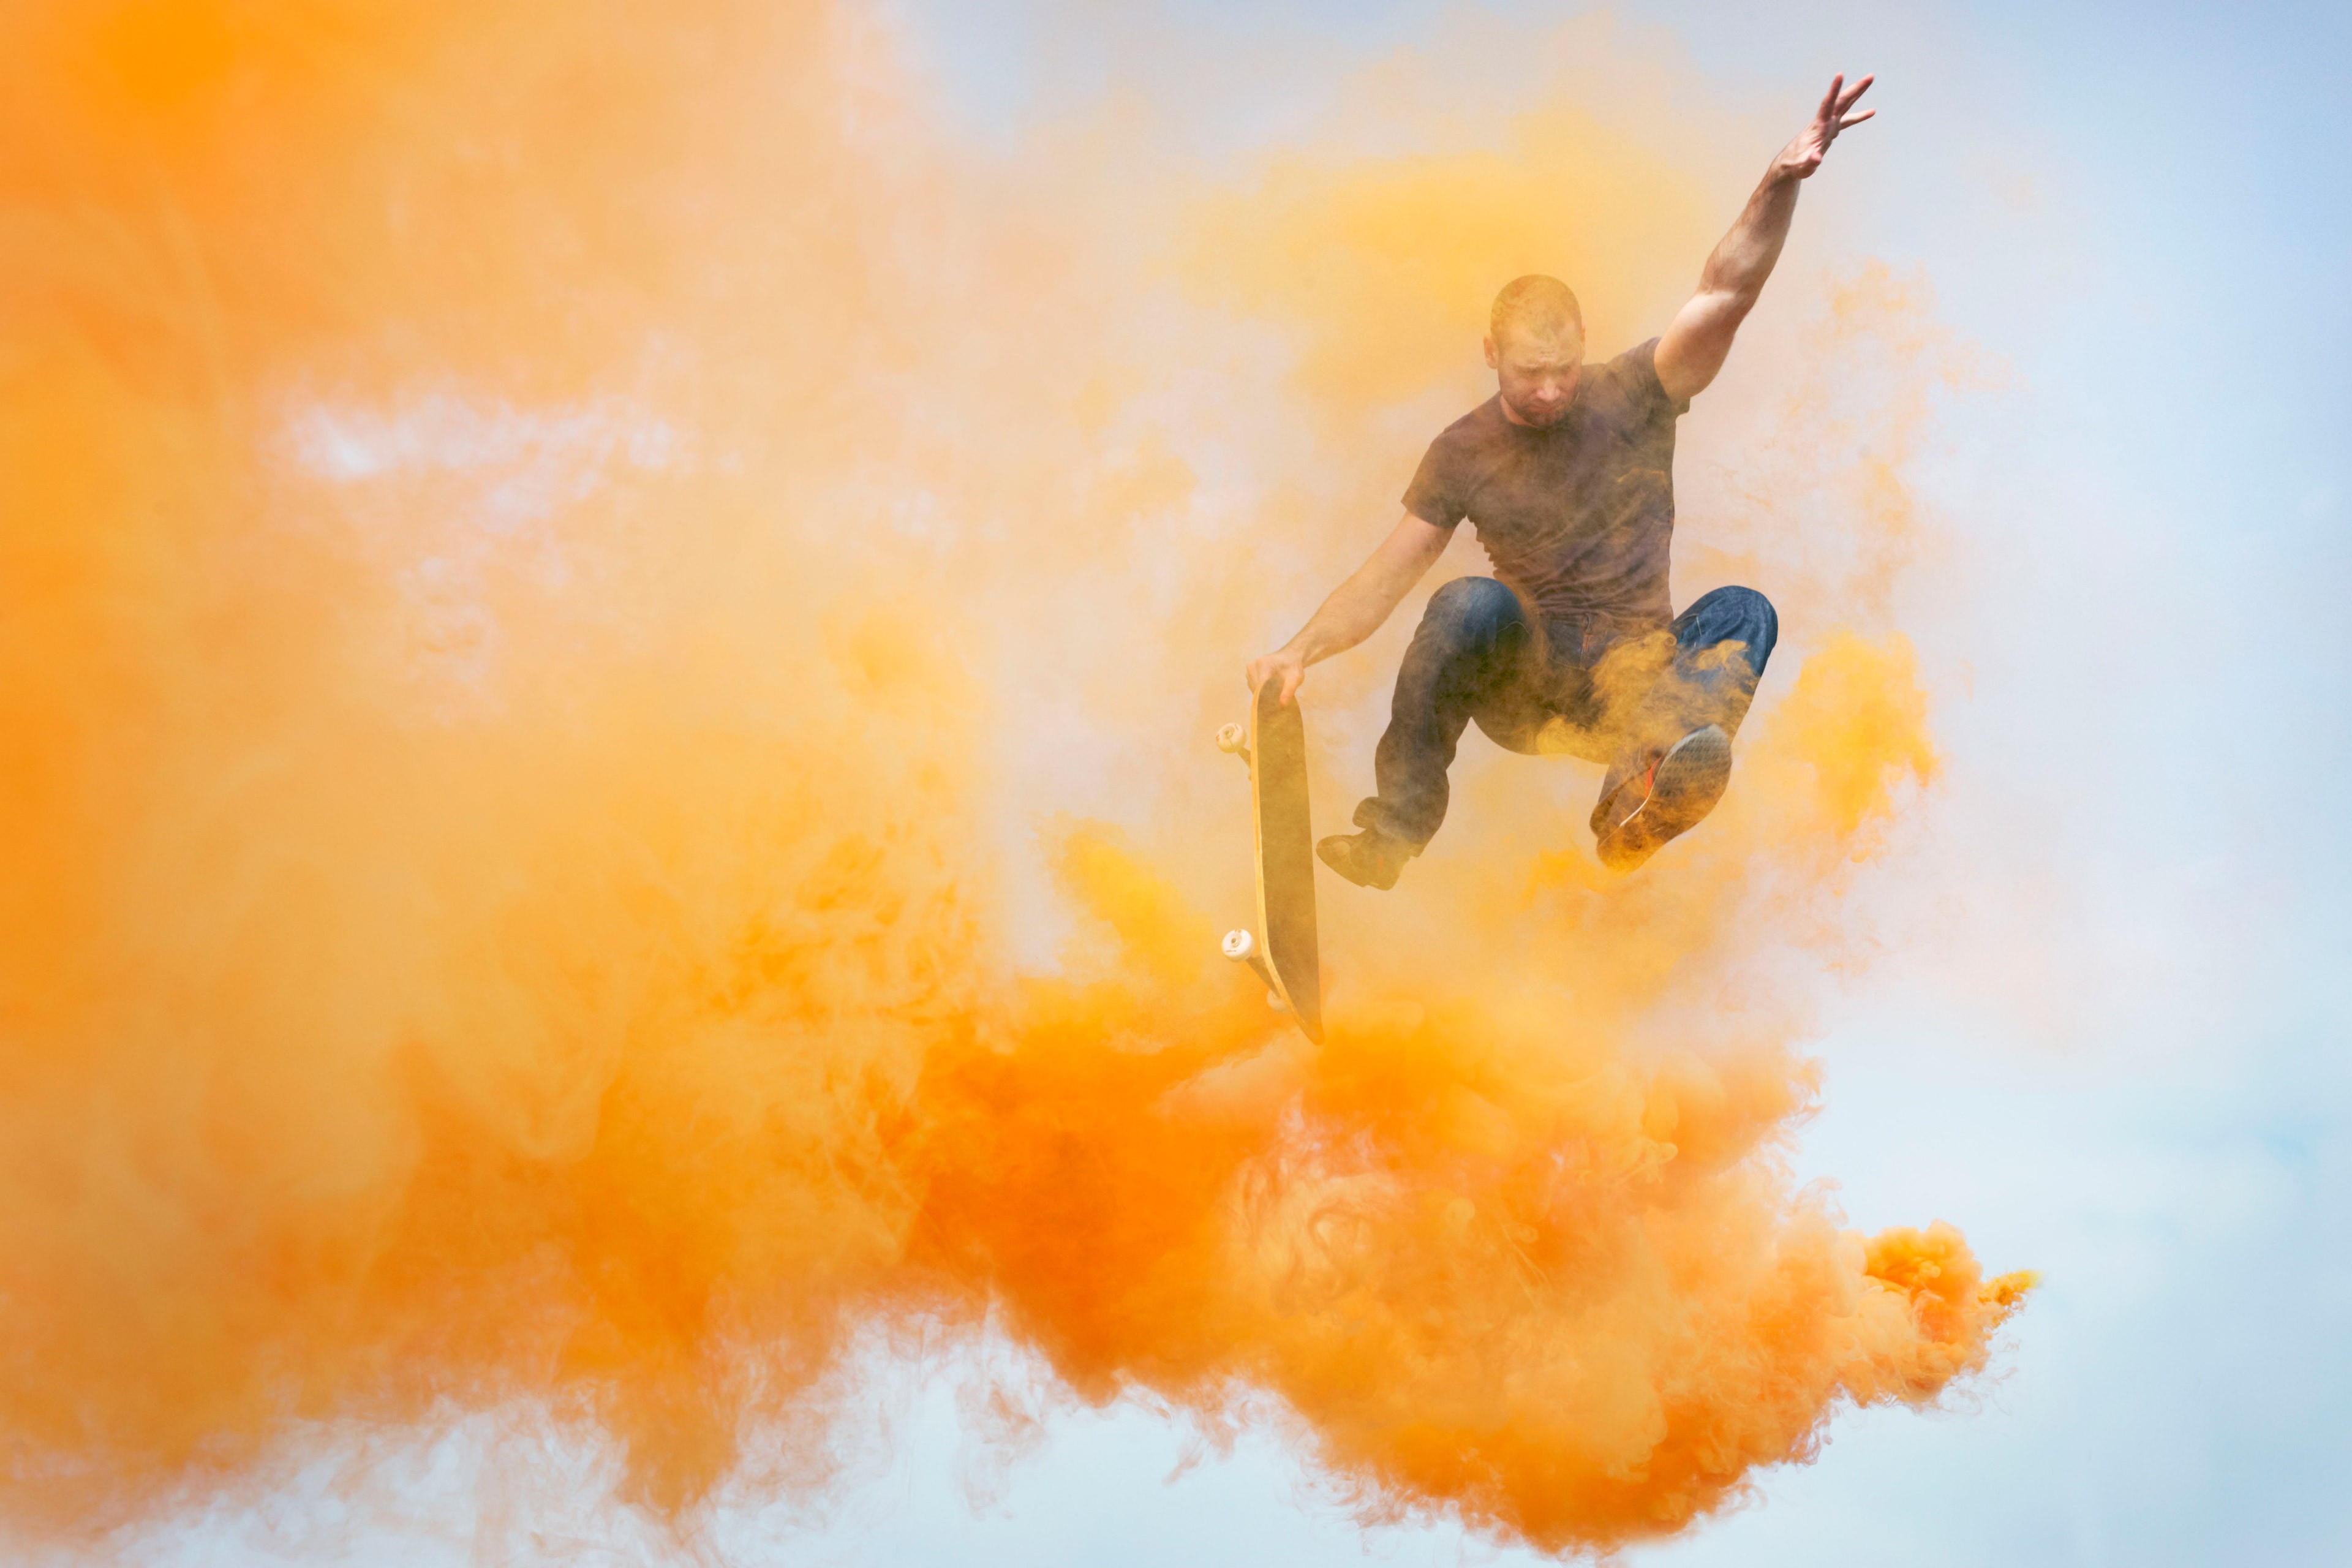 スケートボードでオレンジの煙を跳び越す男性